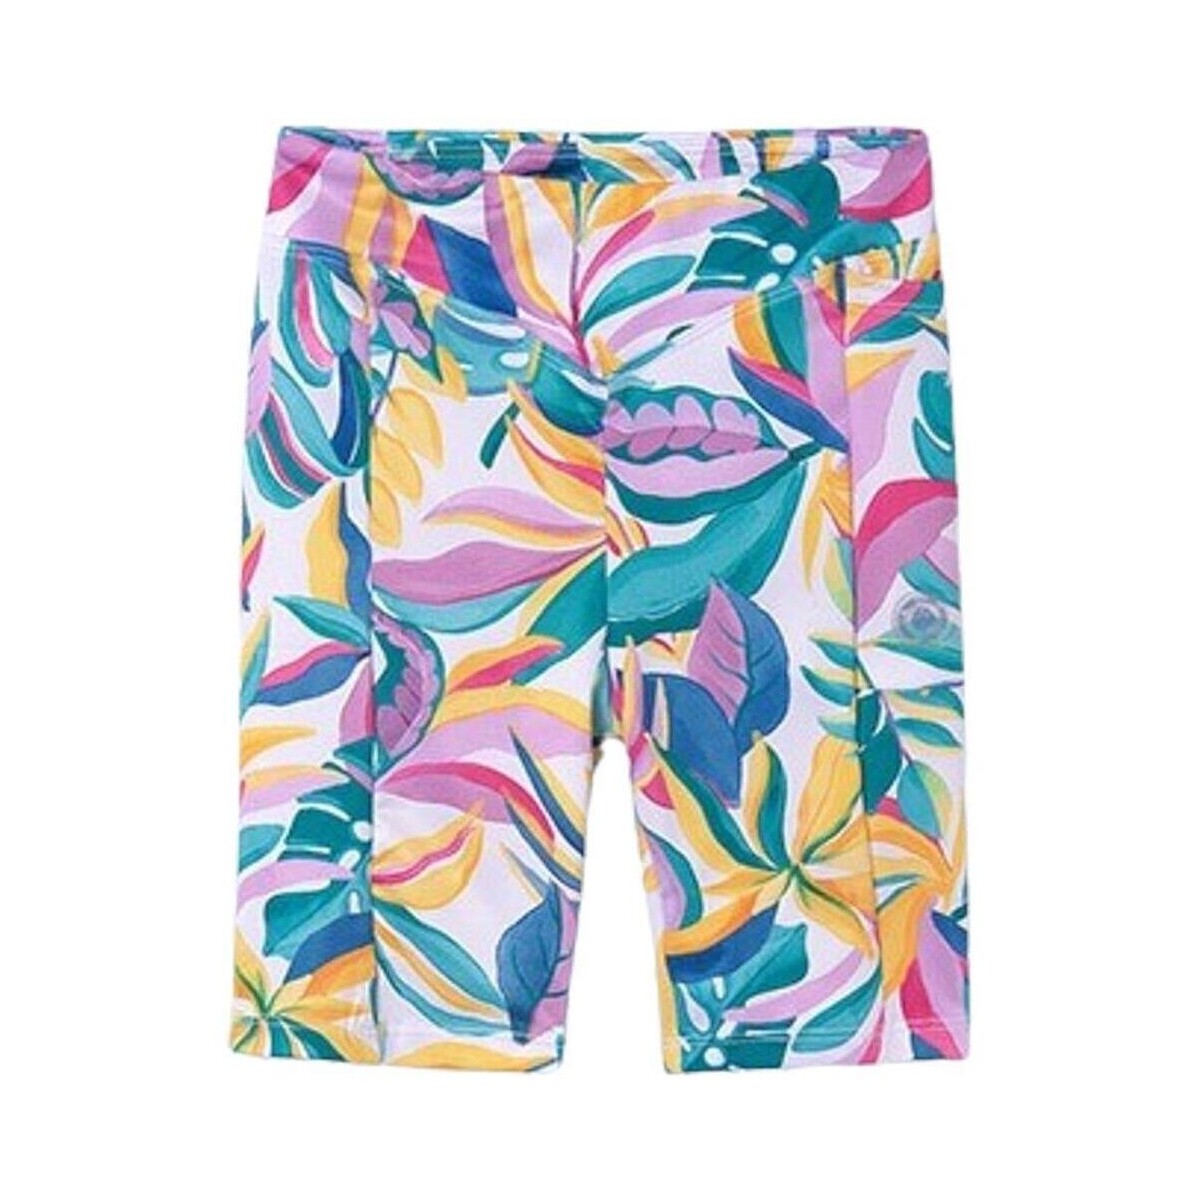 Textil Rapariga Shorts / Bermudas Mayoral  Multicolor